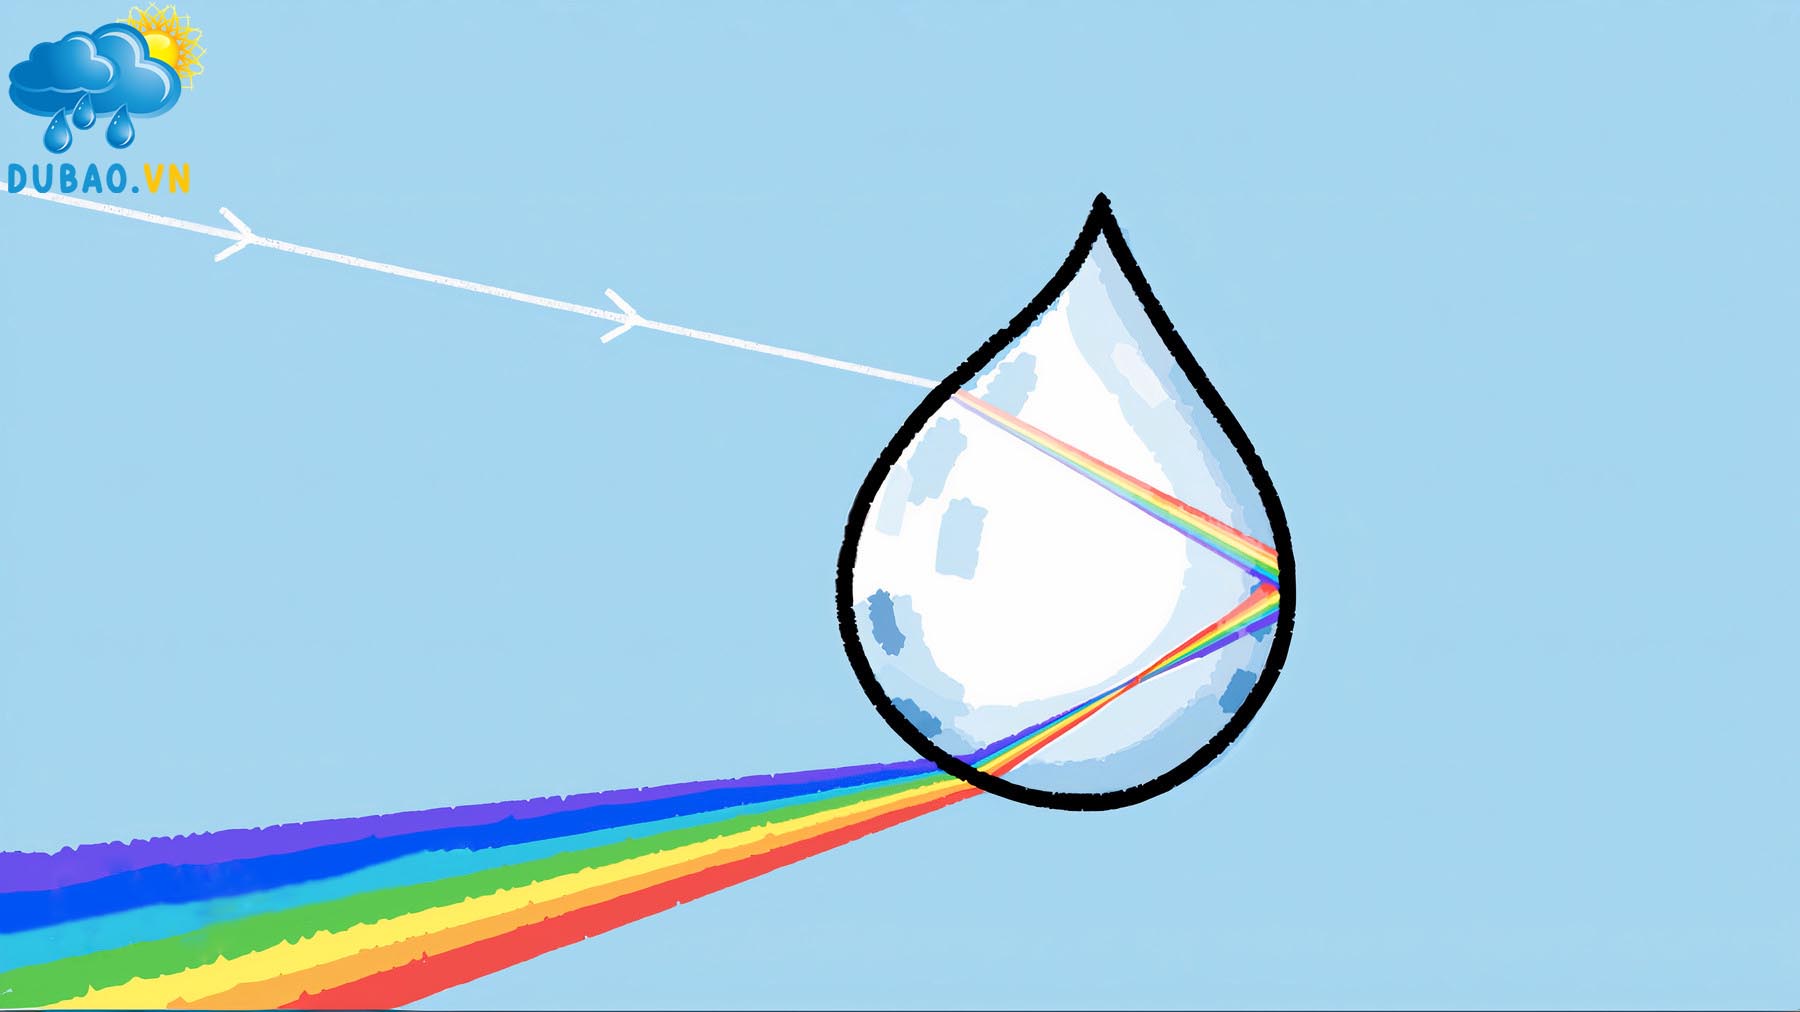 Cầu vồng sau mưa là hiện tượng có bảy màu sắc cơ bản